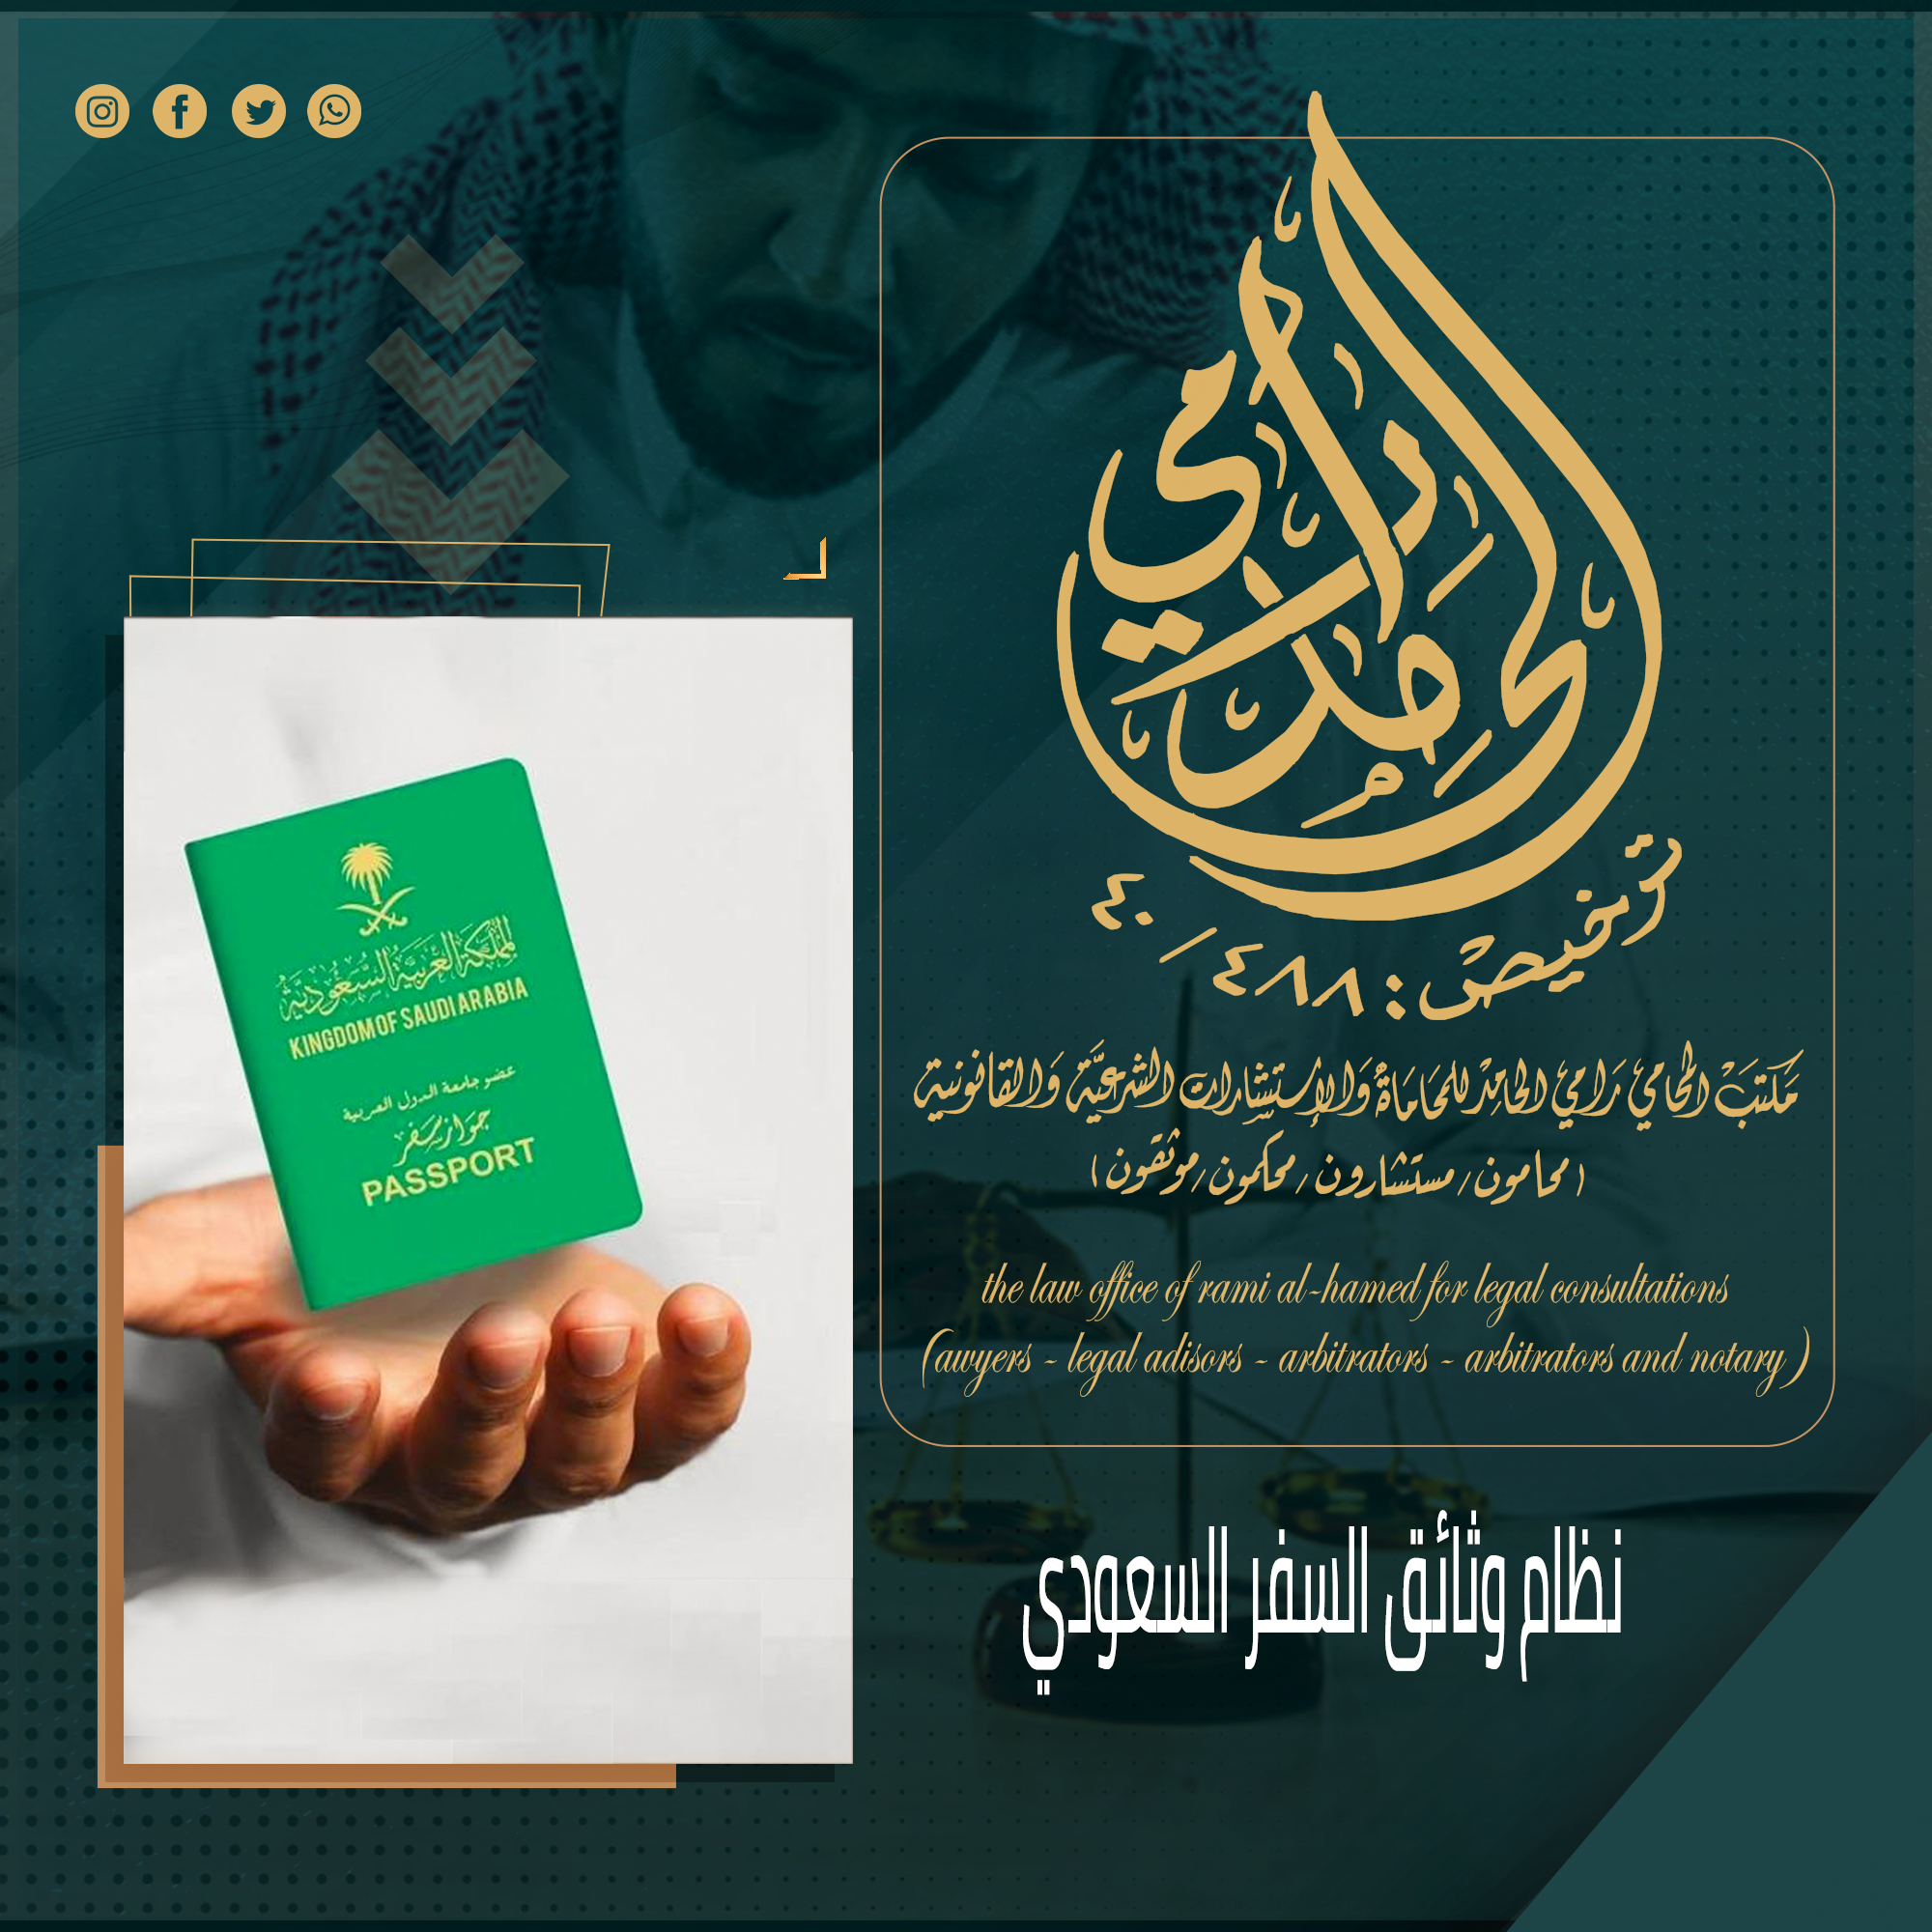 نظام وثائق السفر السعودي